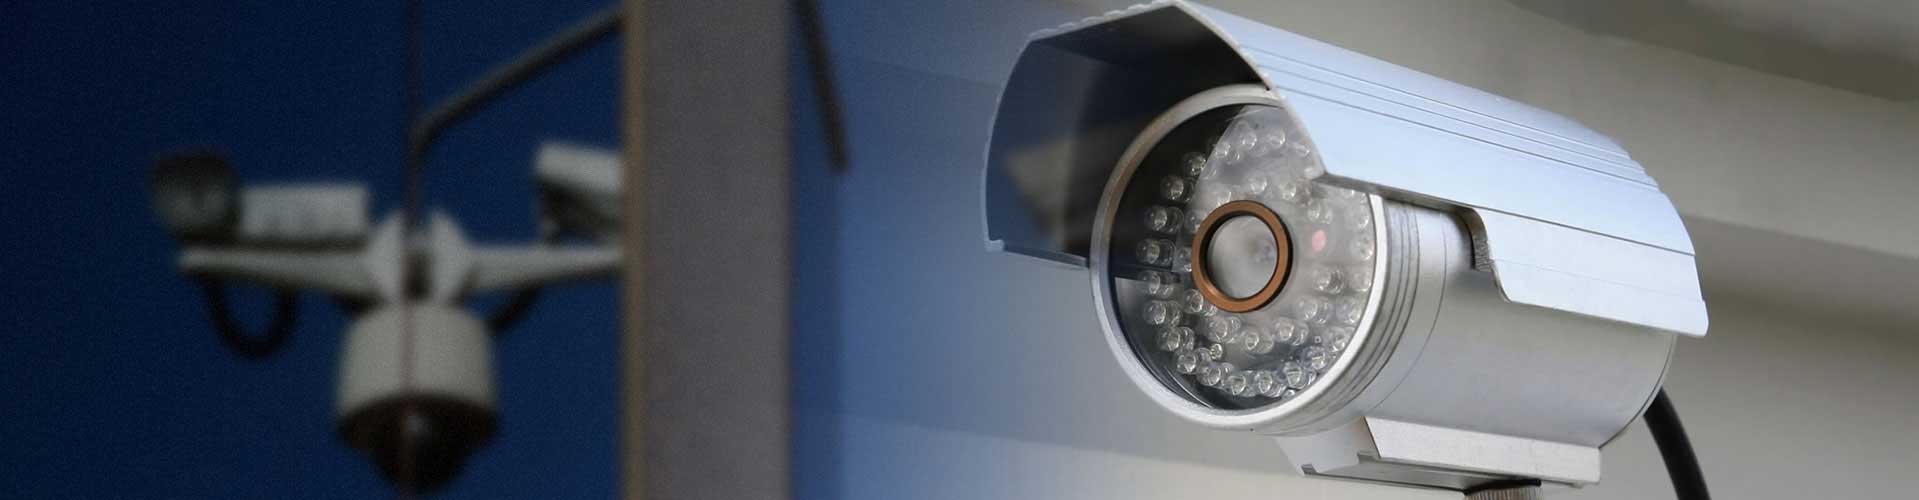 بوابات كاشف عن المعادن | رائدة في مجال كاميرات المراقبة | شركة فايد للأنظمة الأمنية | fayed security system